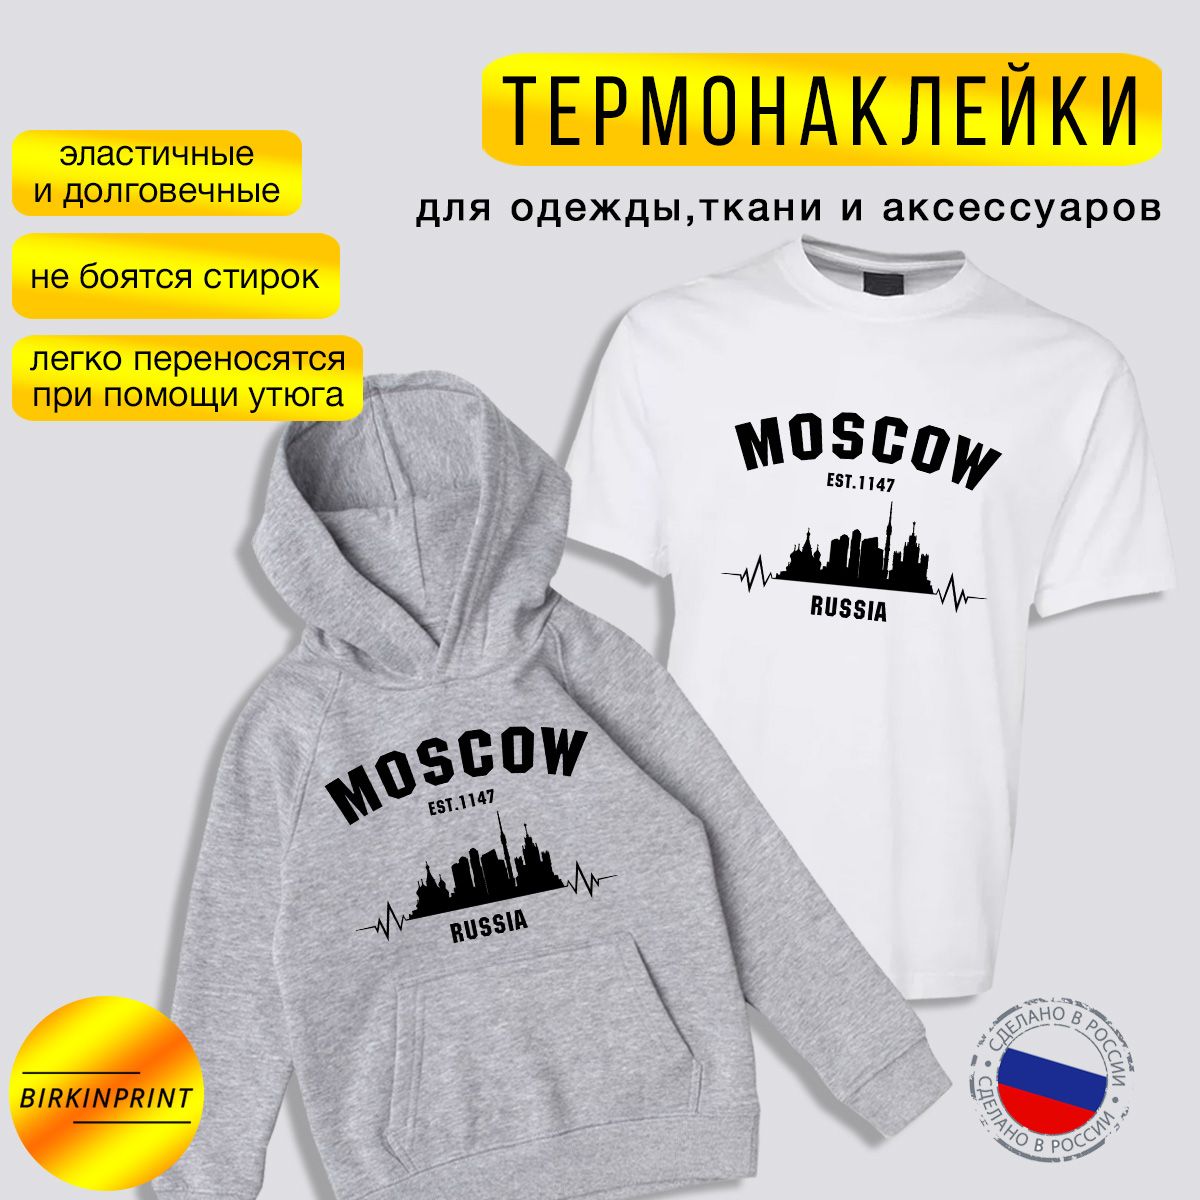 Термонаклейканаодежду,наспортивныйкостюм,футболку,Москва,на19,5*25см.BIRKINPRINT